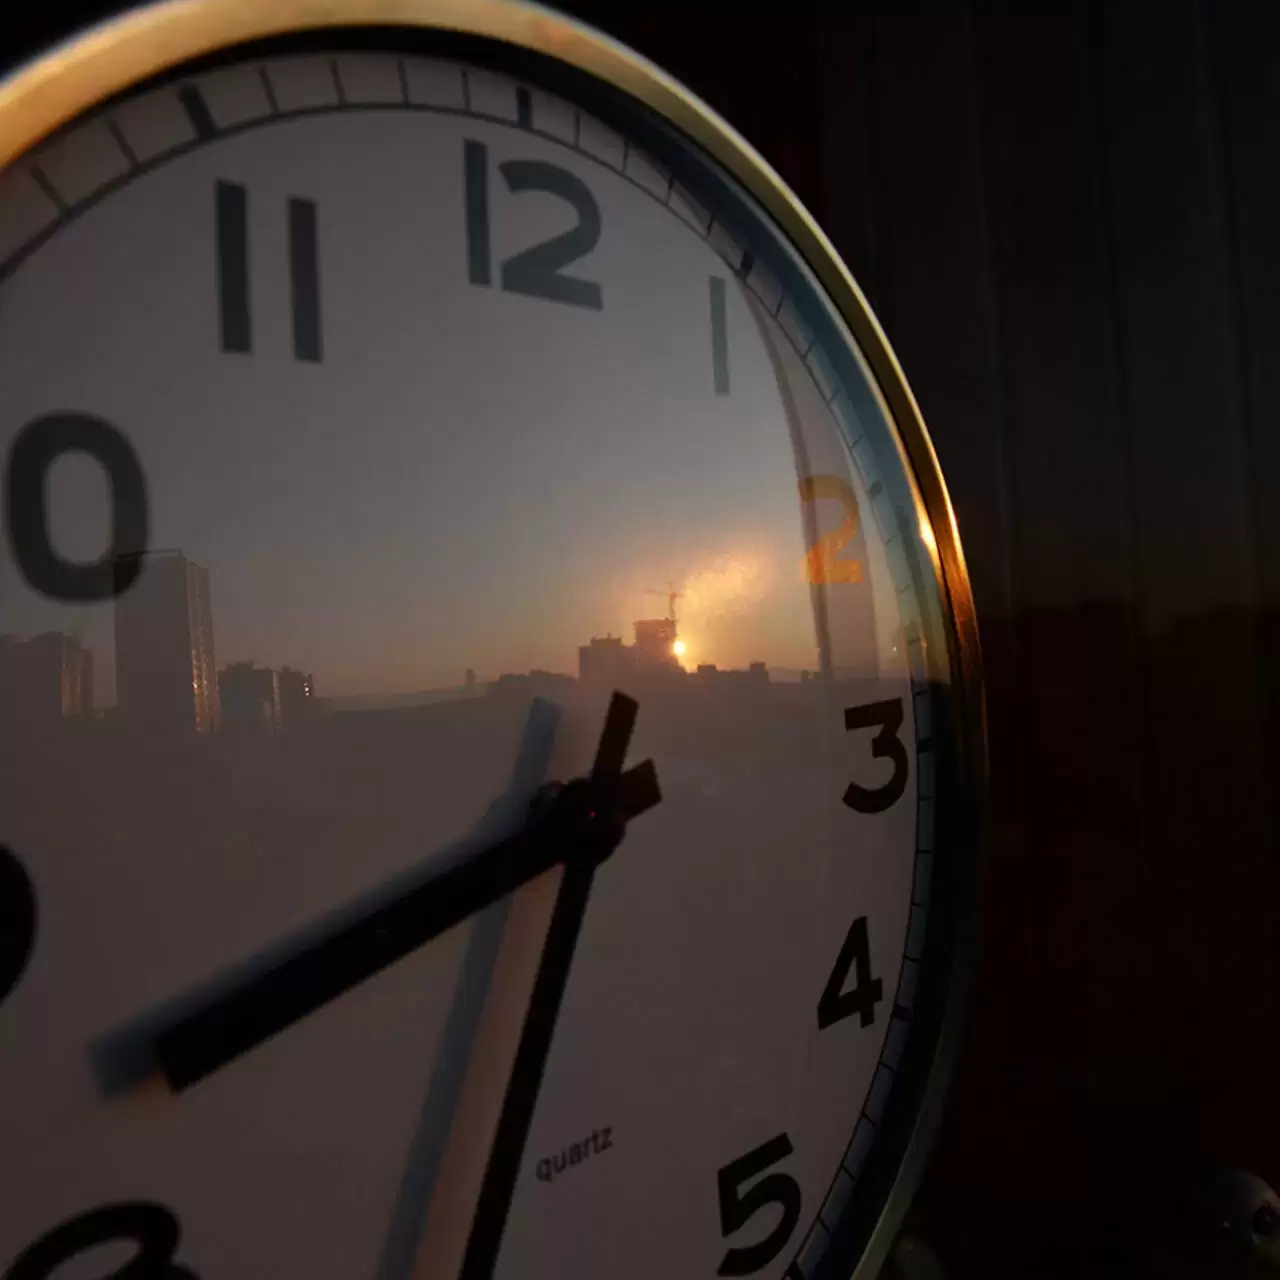 Украина перевела часы на летнее время. 2 Часа ночи на часах стрелки. Часы Украина. 19 Часов вечера. На Украине часы переводят на летнее время.